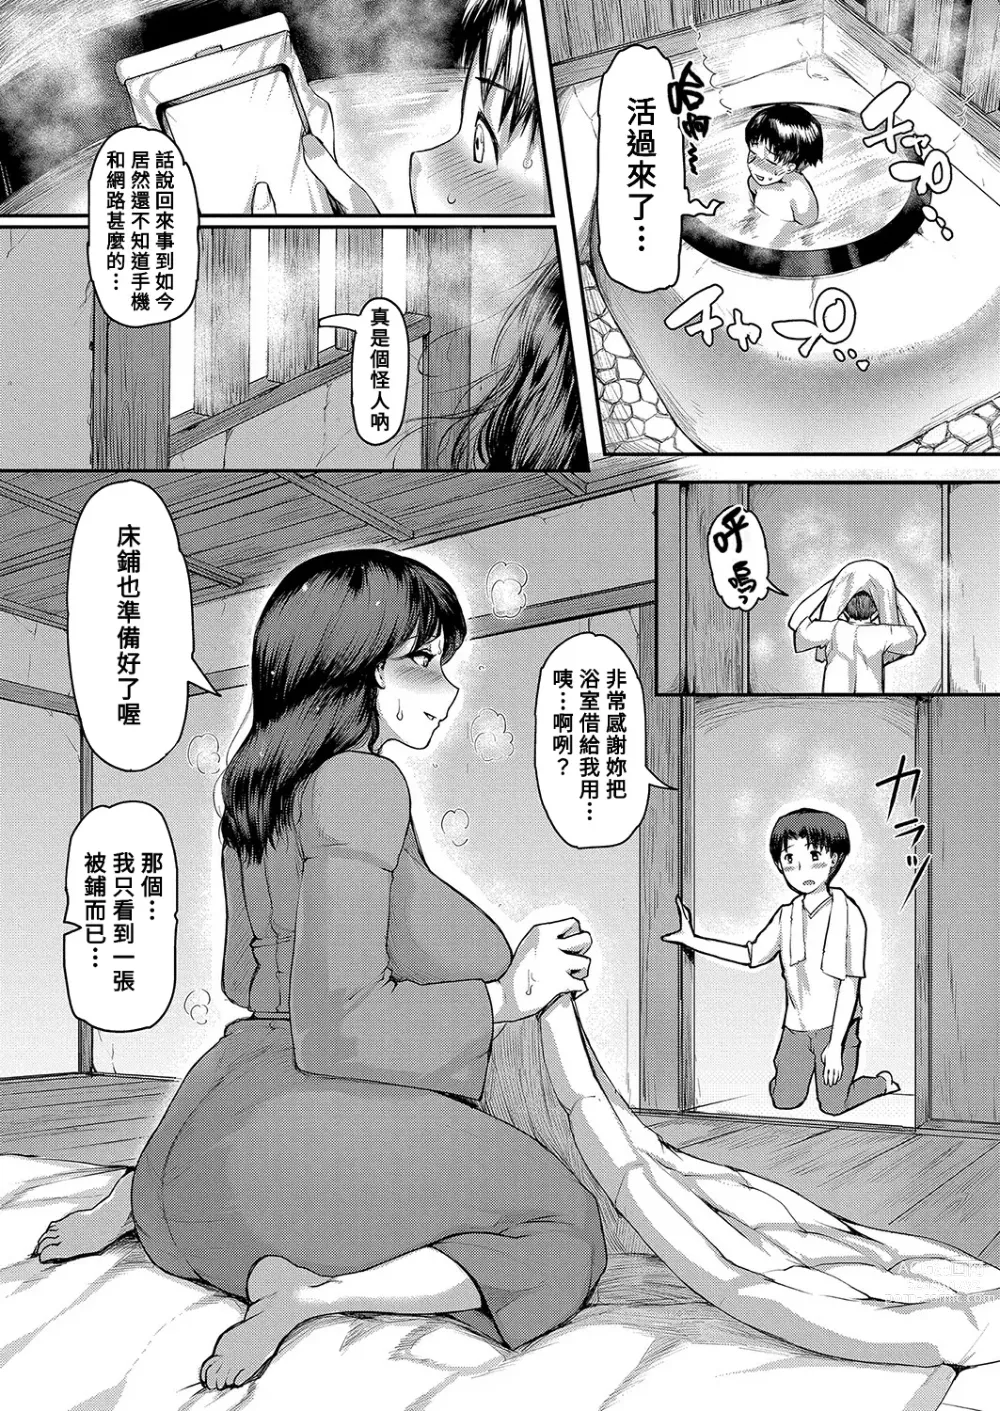 Page 7 of manga Yamajyukujyo